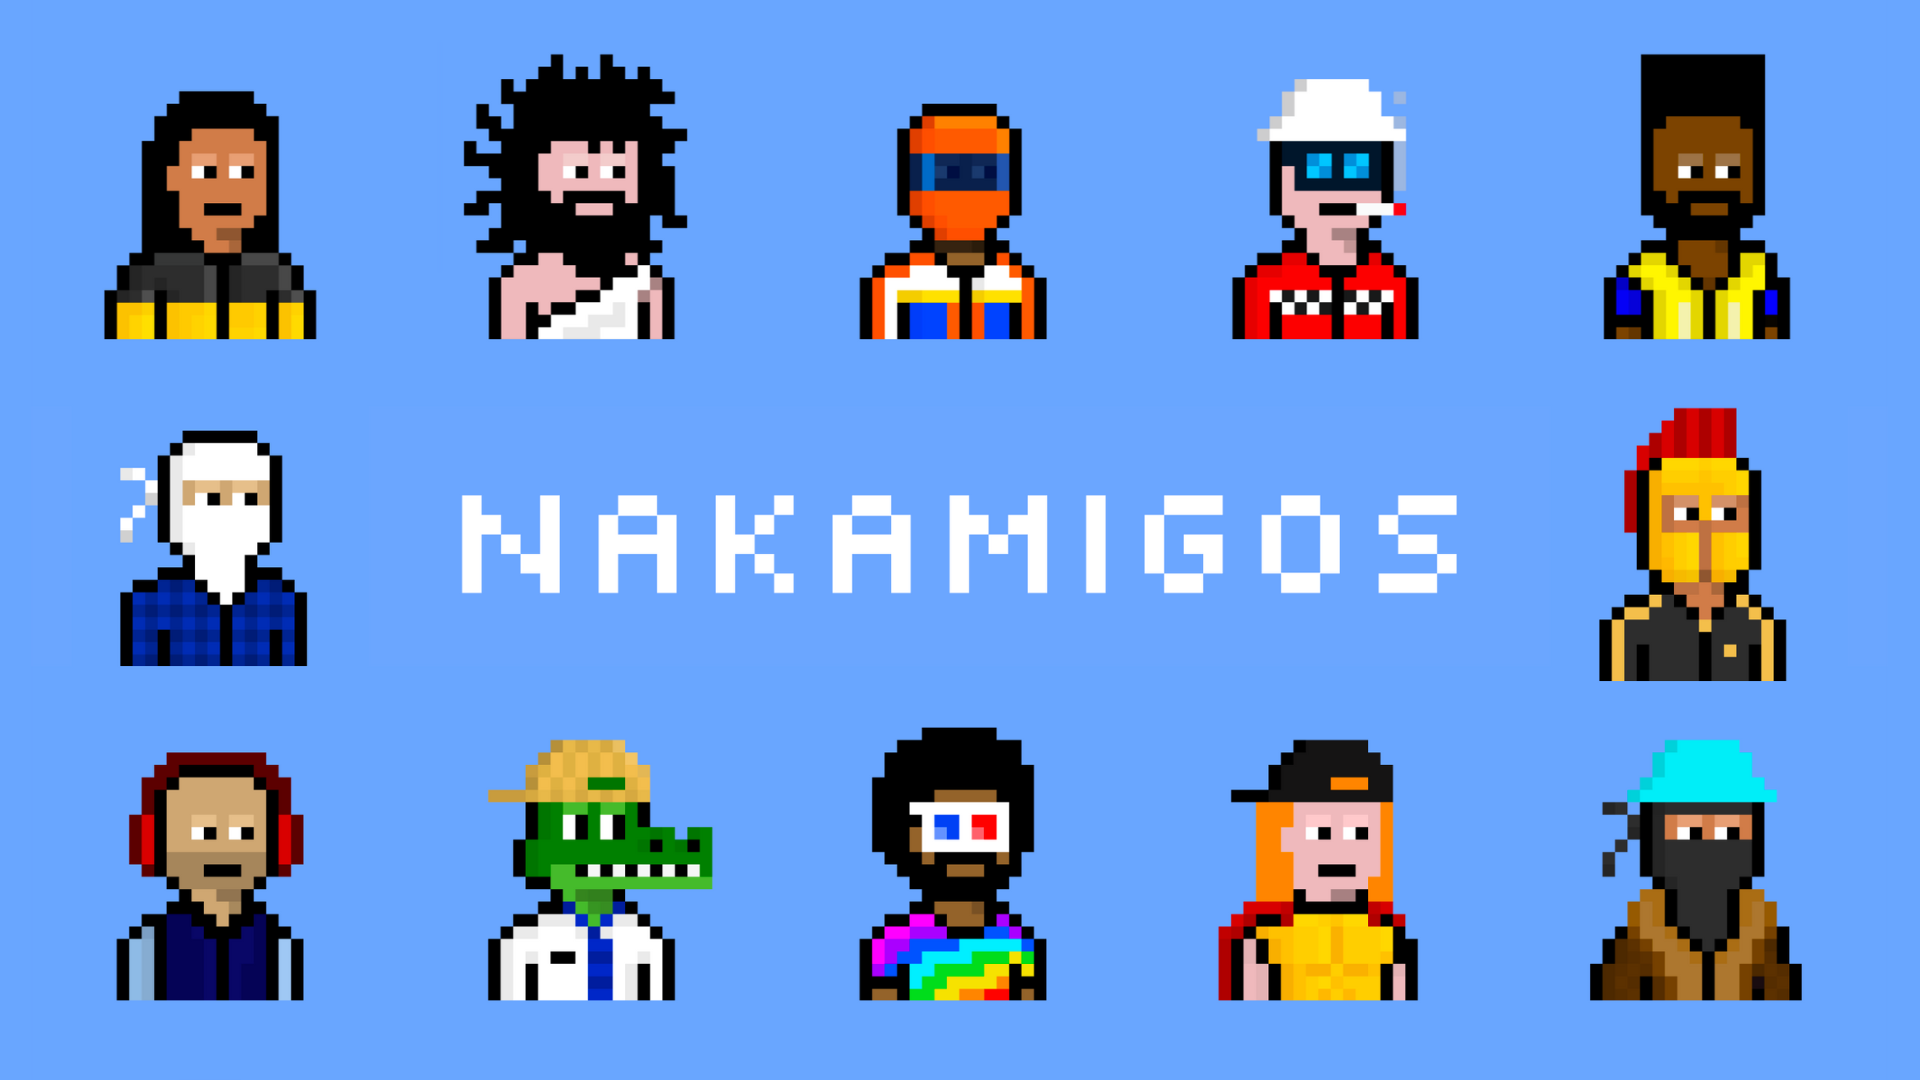 Nakamigos（ナカミゴス）とは